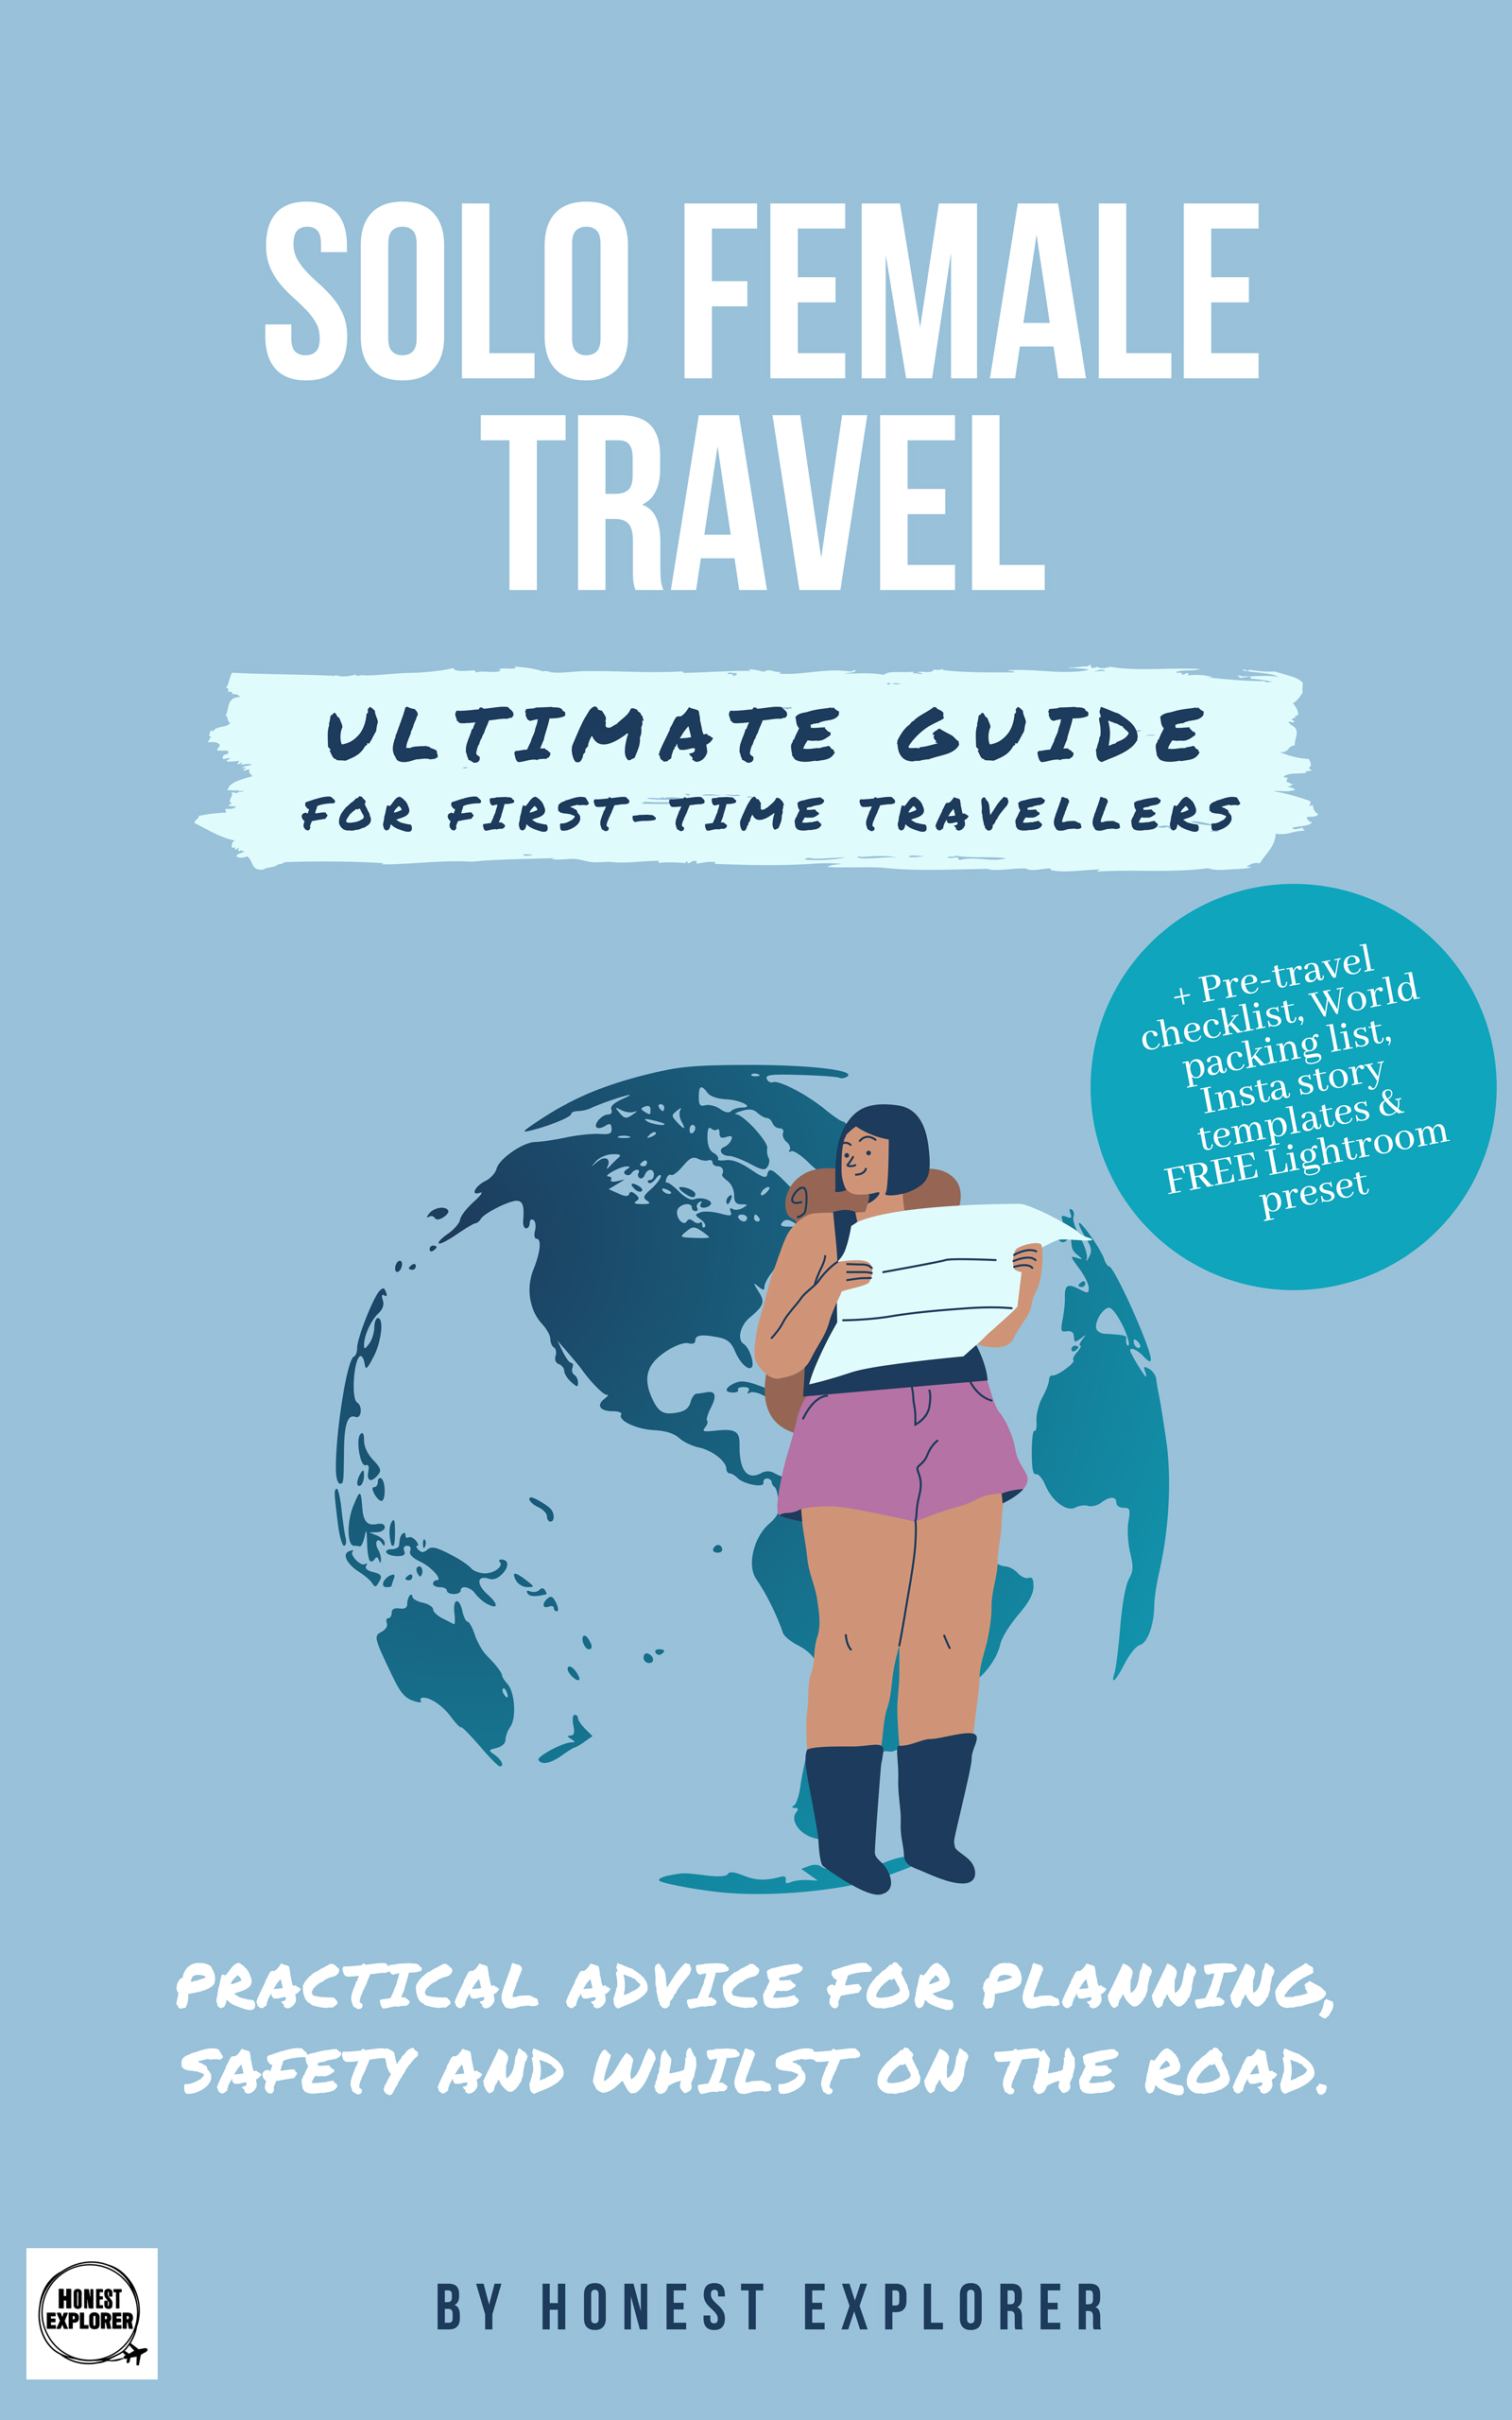 Solo Female Travel Ultimate Guide eBook cover